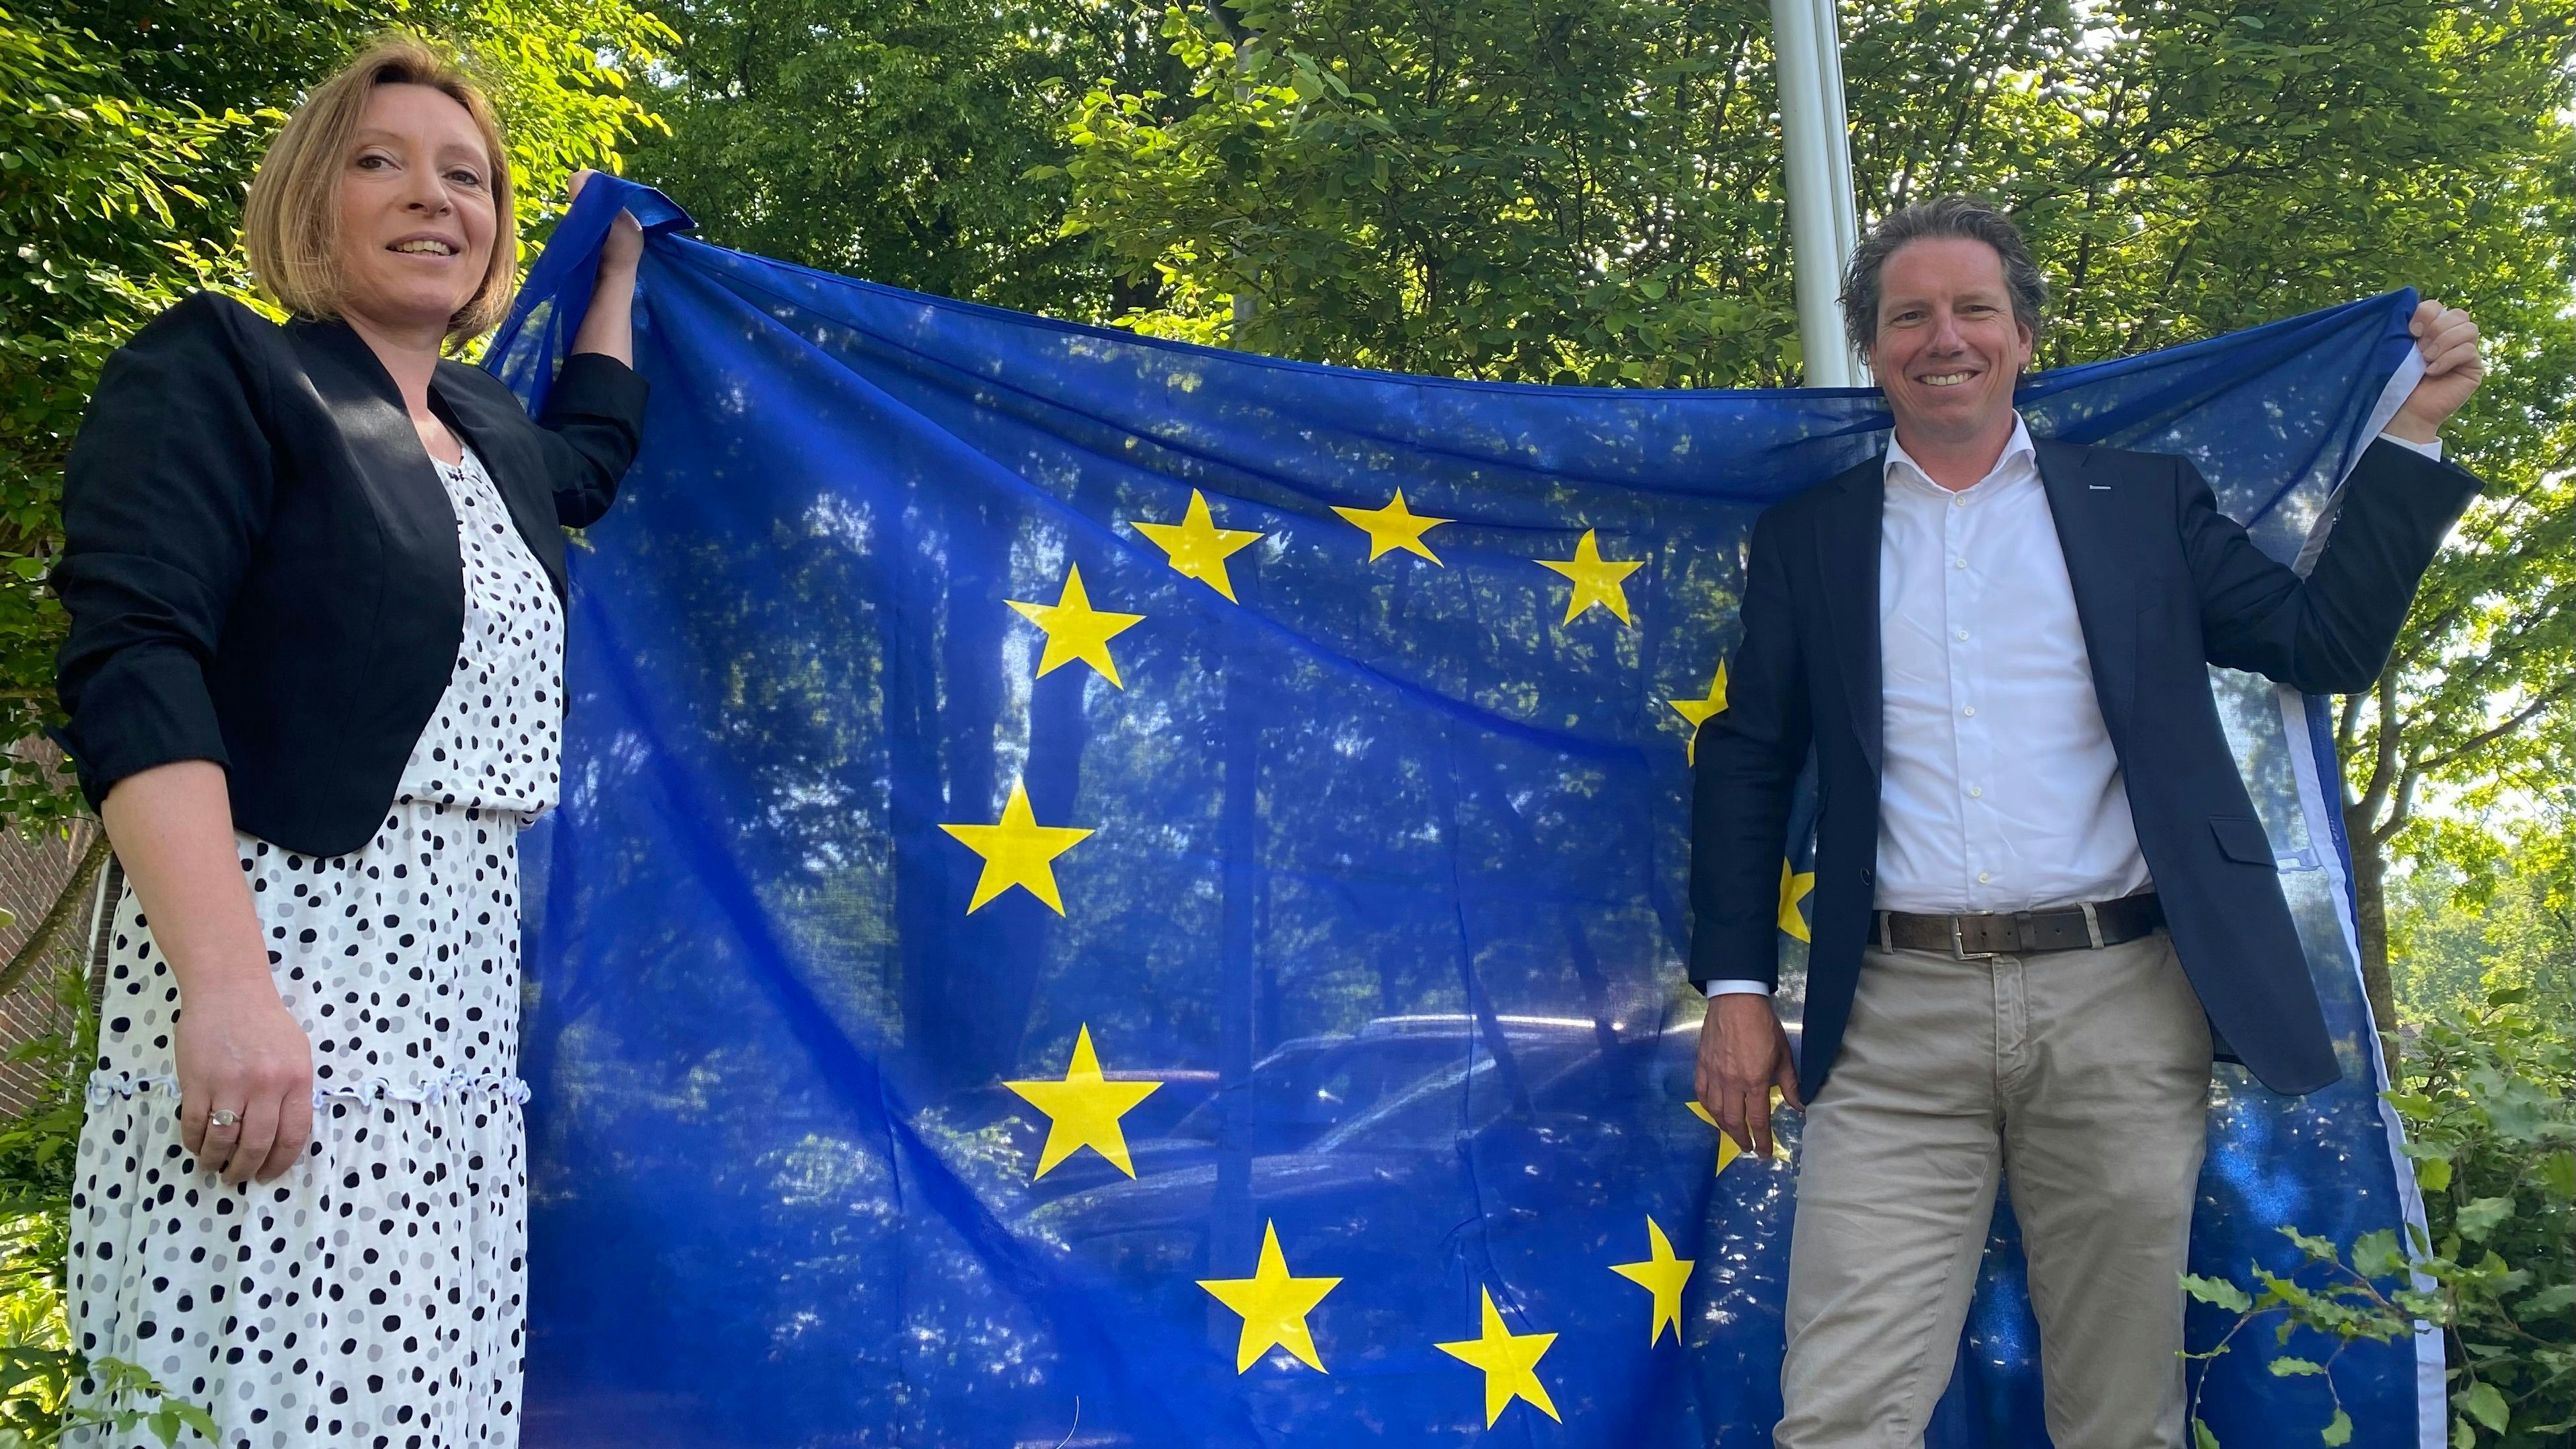 Flagge für Europa zeigen: Claudia Kruhl und Lars Murra stellen das auf 5 Jahre angelegte Projekt für Auslandspraktika vor. Foto: Wimberg